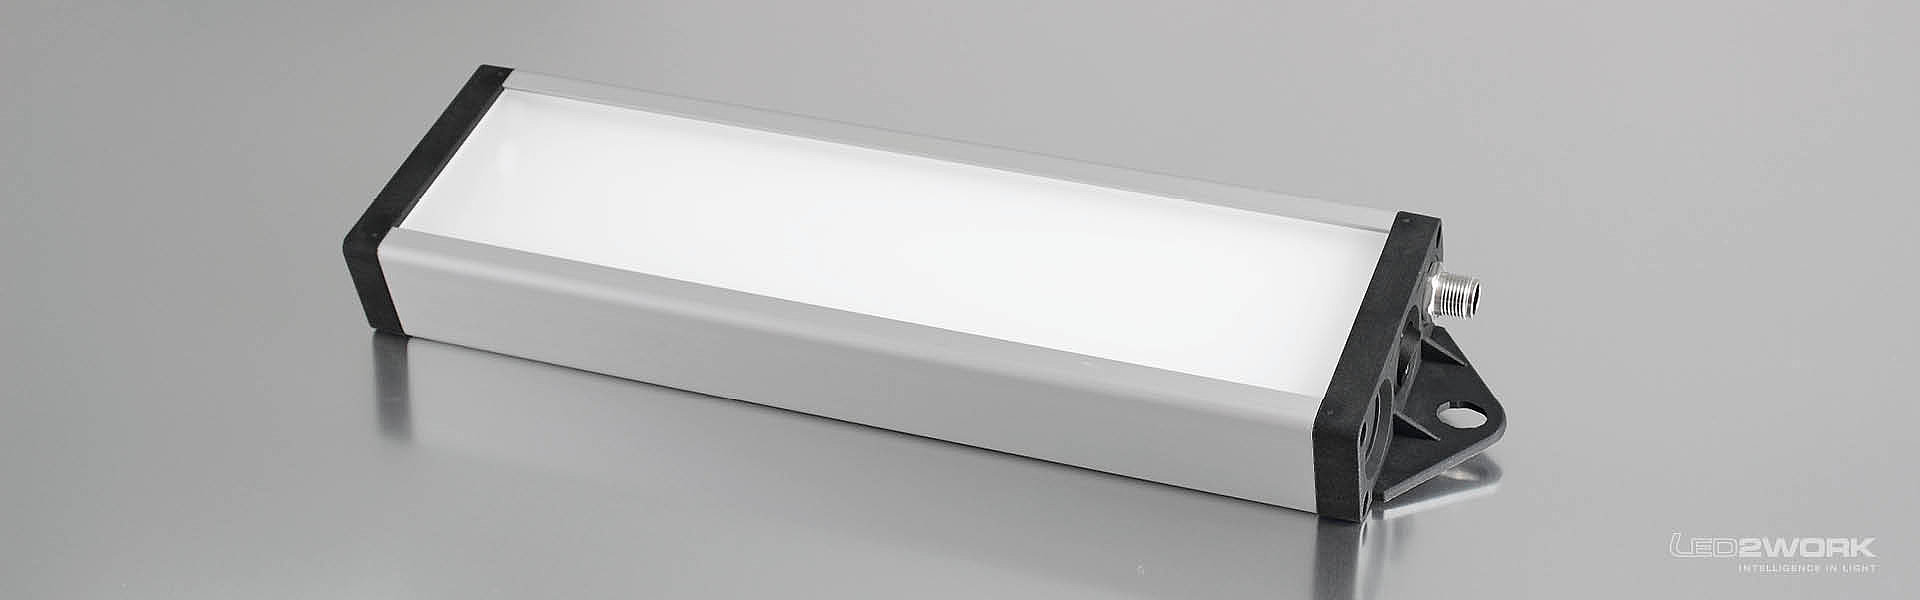 Illustration du luminaire LED pour poste de travail | luminaire système LED | luminaire de signalisation LED UNILED SL RGB-W de LED2WORK